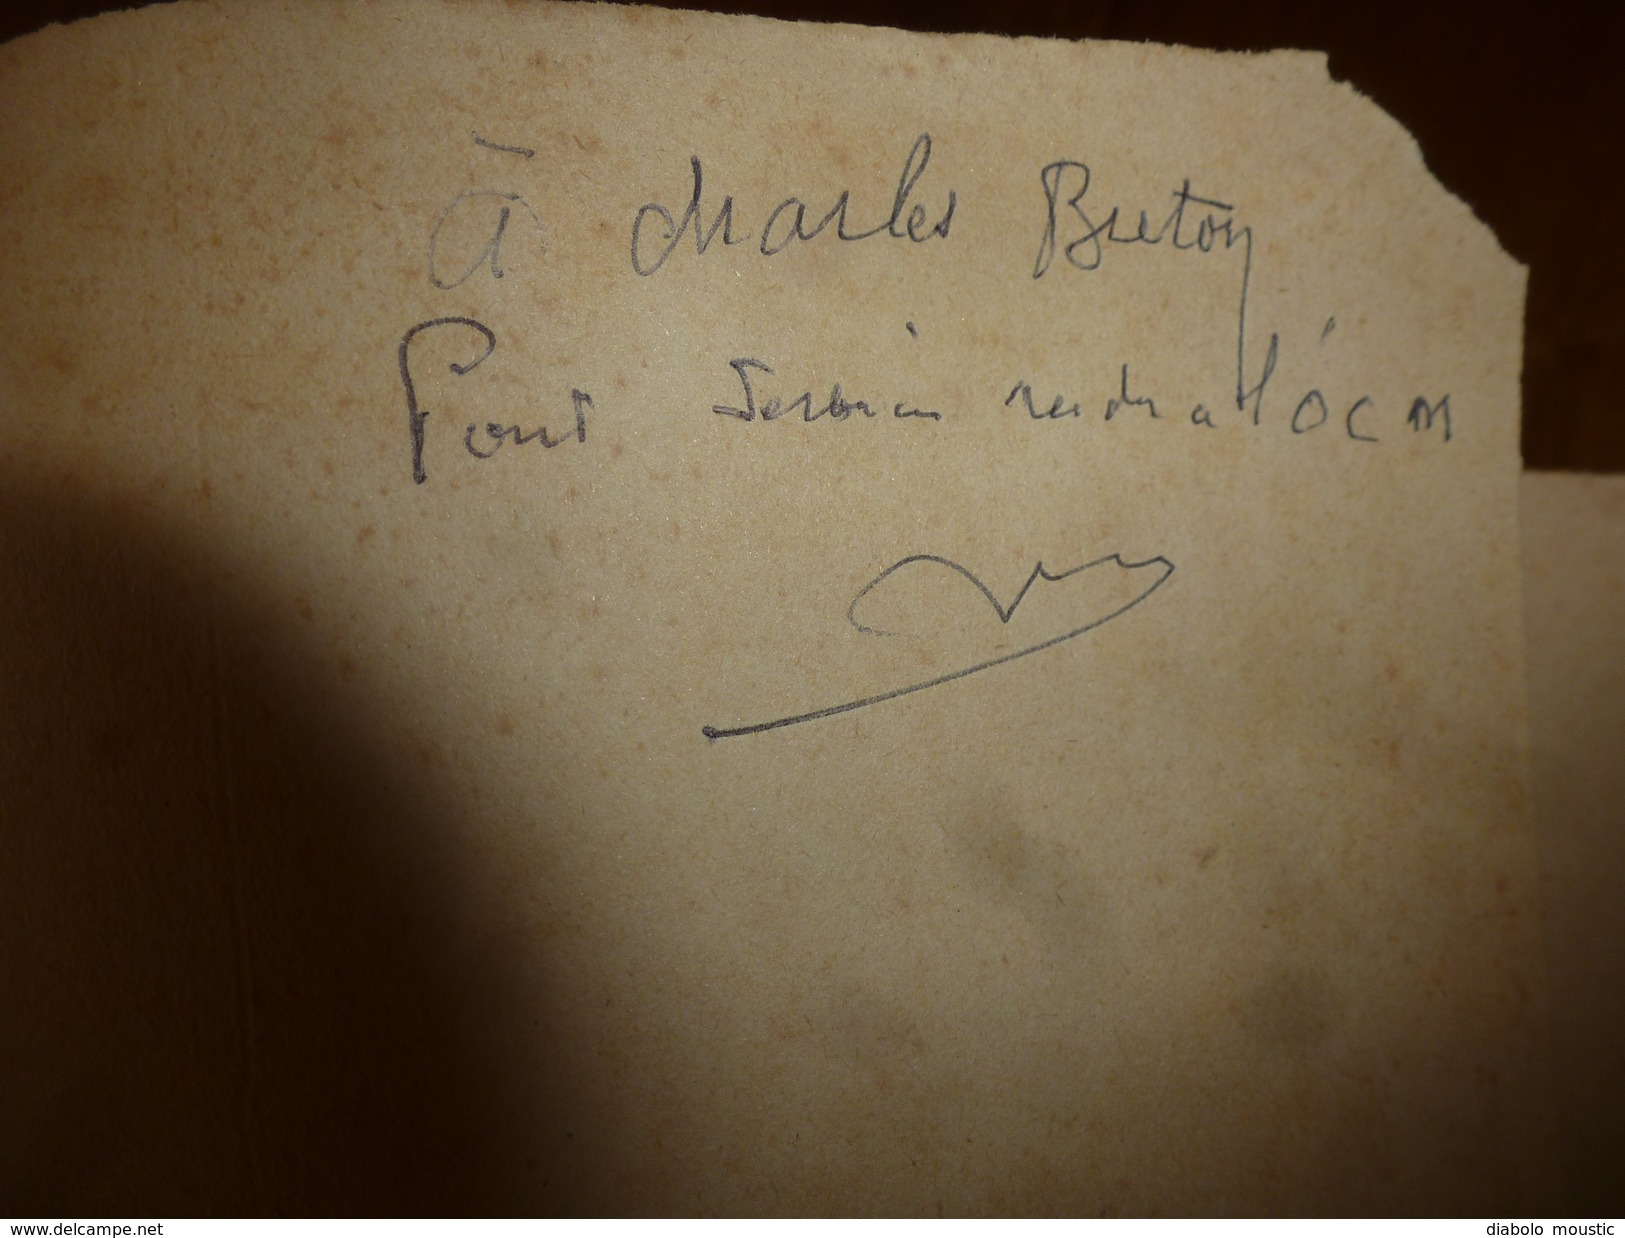 1947 UNE AFFAIRE DE TRAHISON Par REMY Dédicacé à Charles Breton CHEF RESISTANT,pour Service Rendu à L'OCM,photographies - Francés